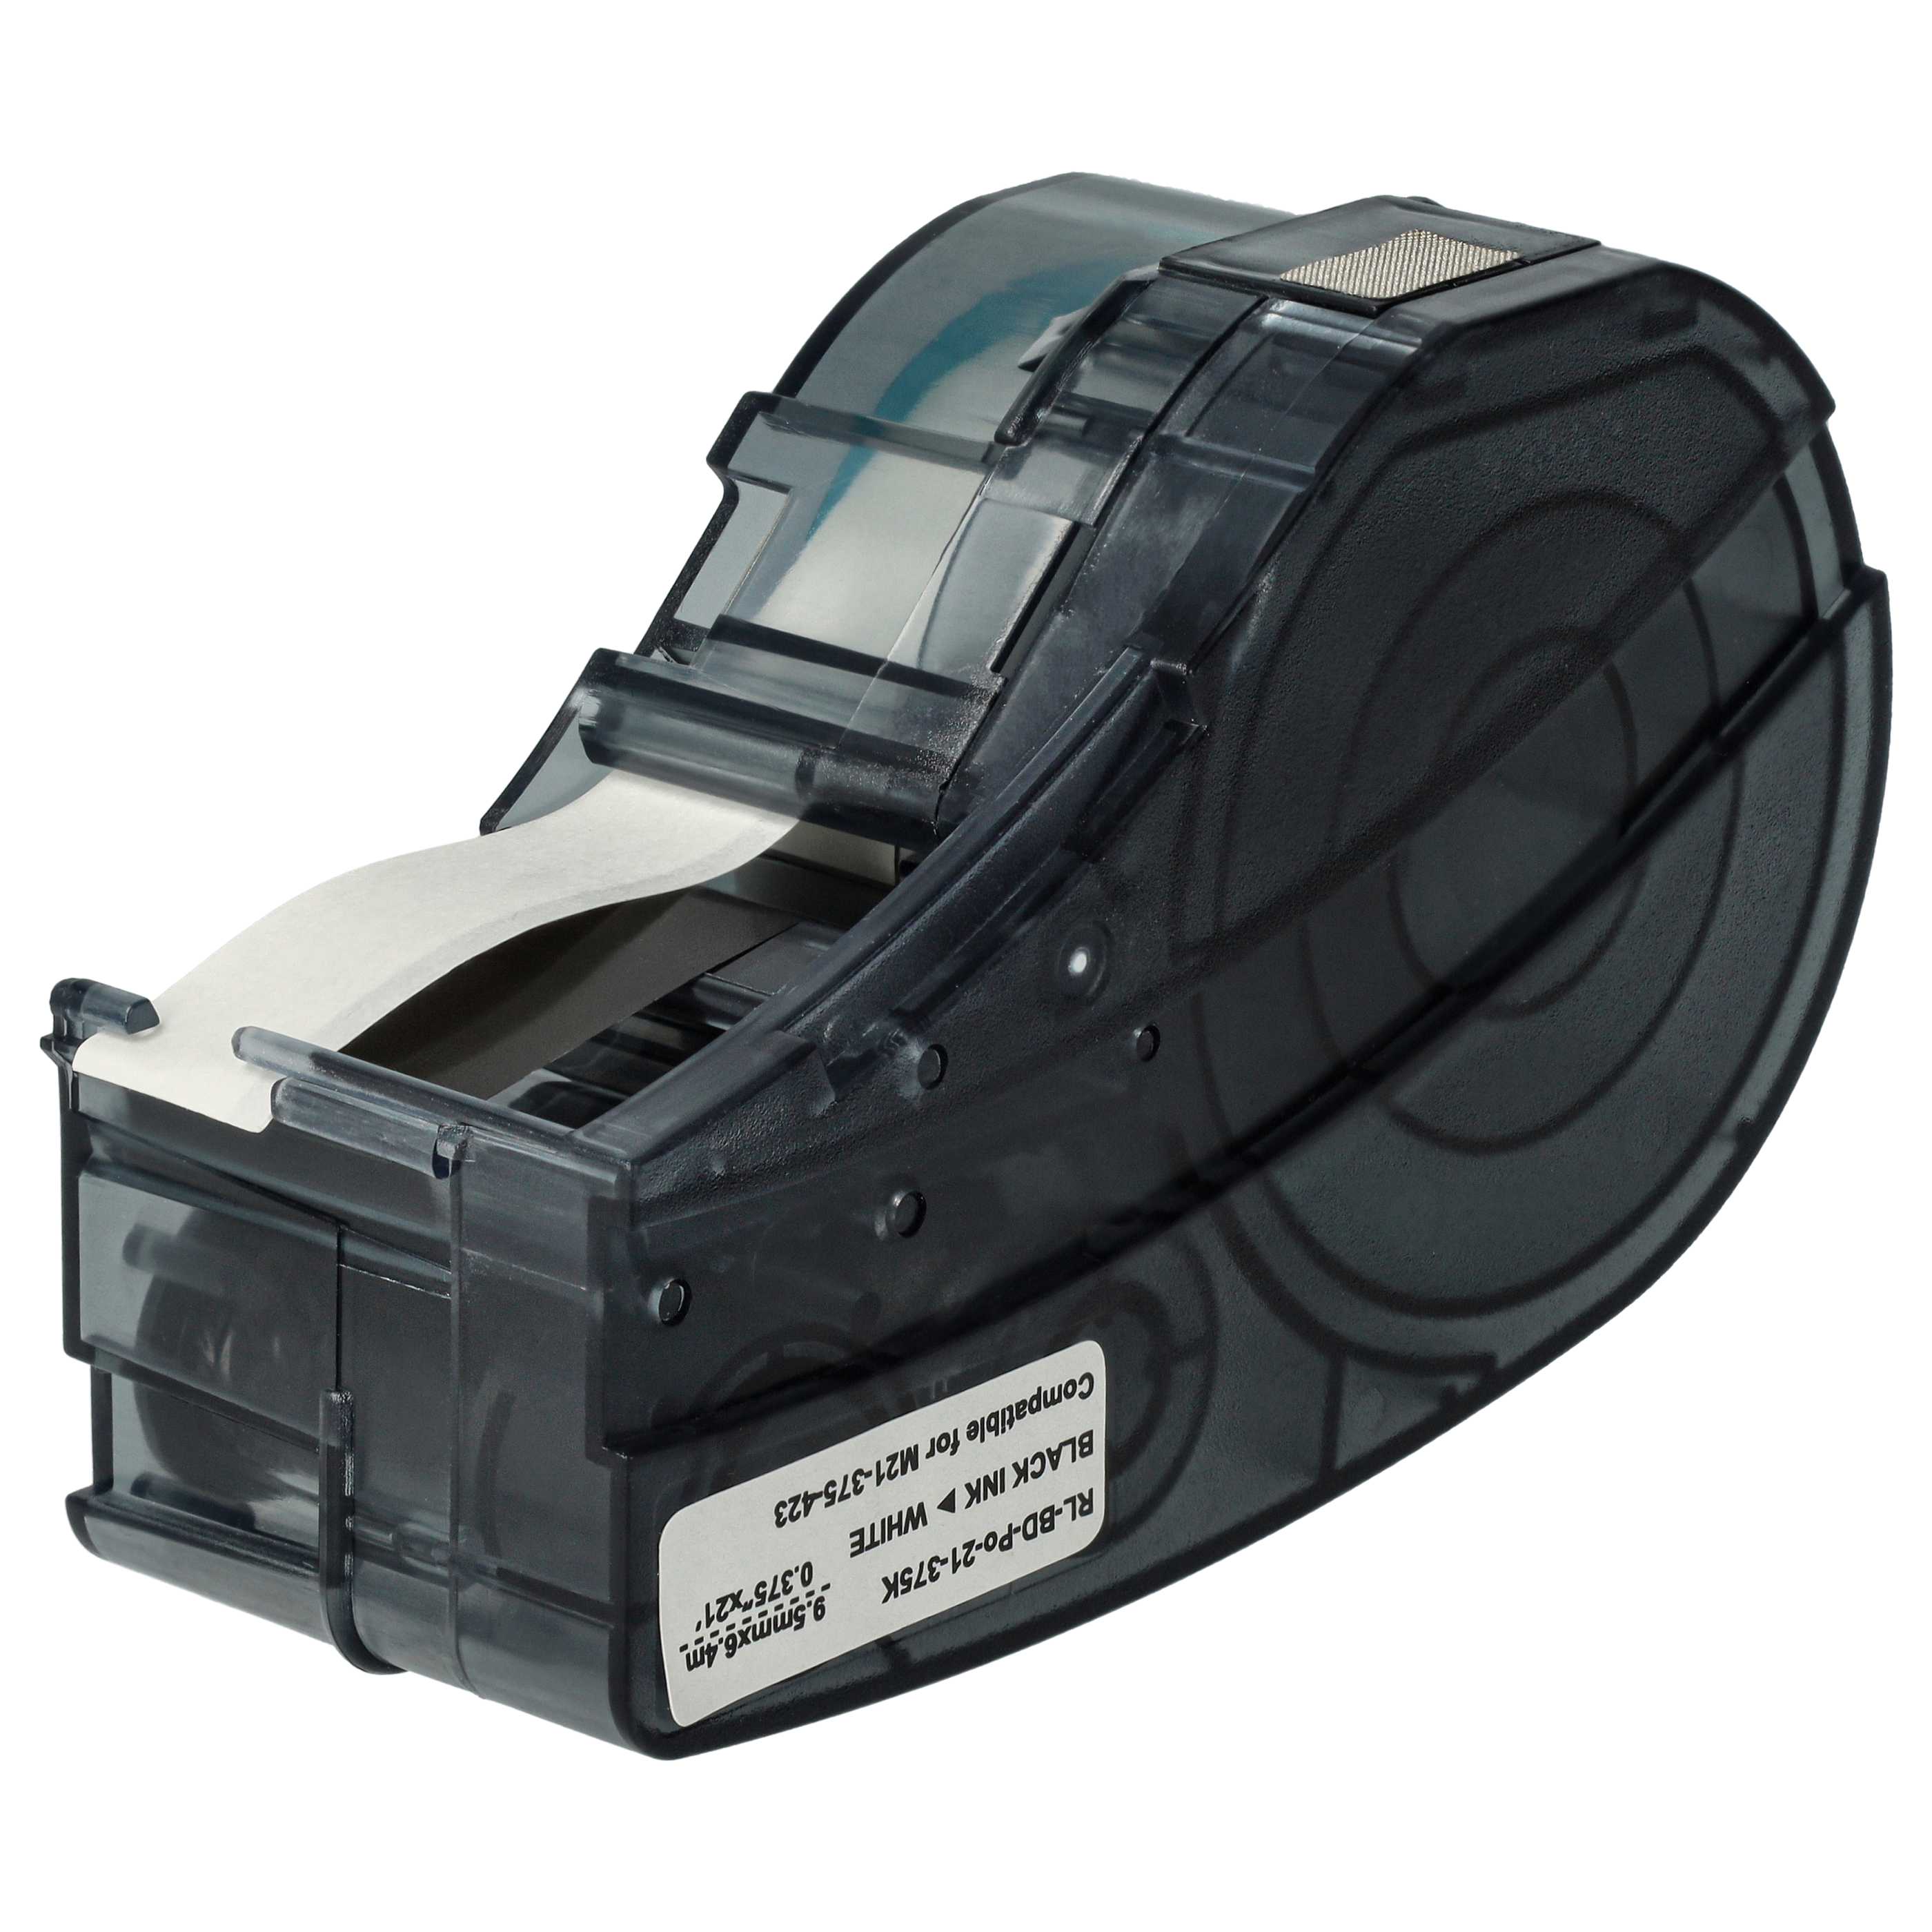 Cassette à ruban remplace Brady M21-375-423 - 9,53mm lettrage Noir ruban Blanc, polyester permanent